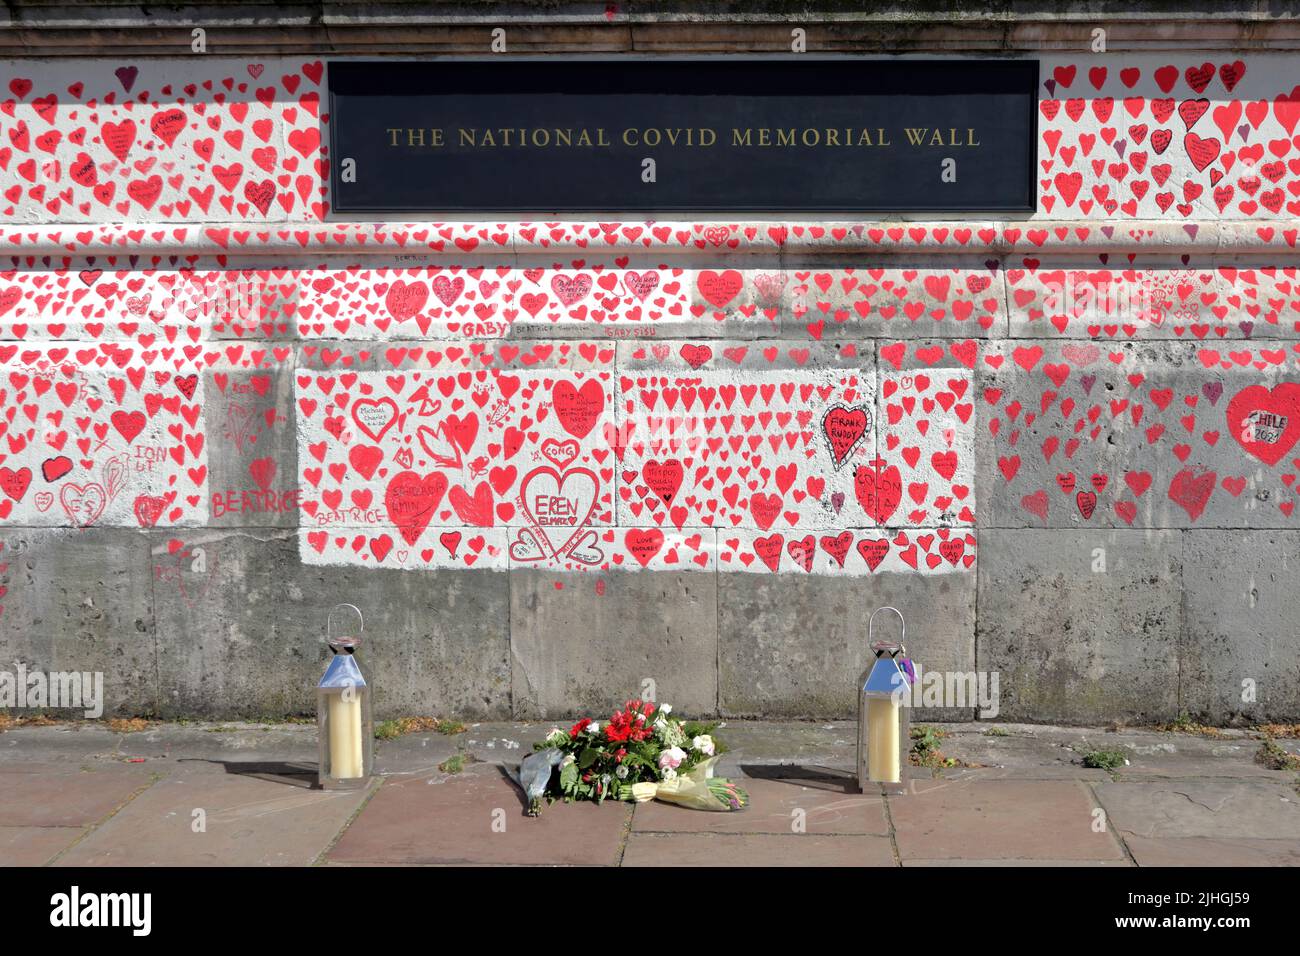 Londres, Royaume-Uni - 30 mars 2021 : le mur commémoratif national des Covid, des volontaires peignant 150 000 coeurs rouges pour commémorer les décès de Covid-19 Banque D'Images